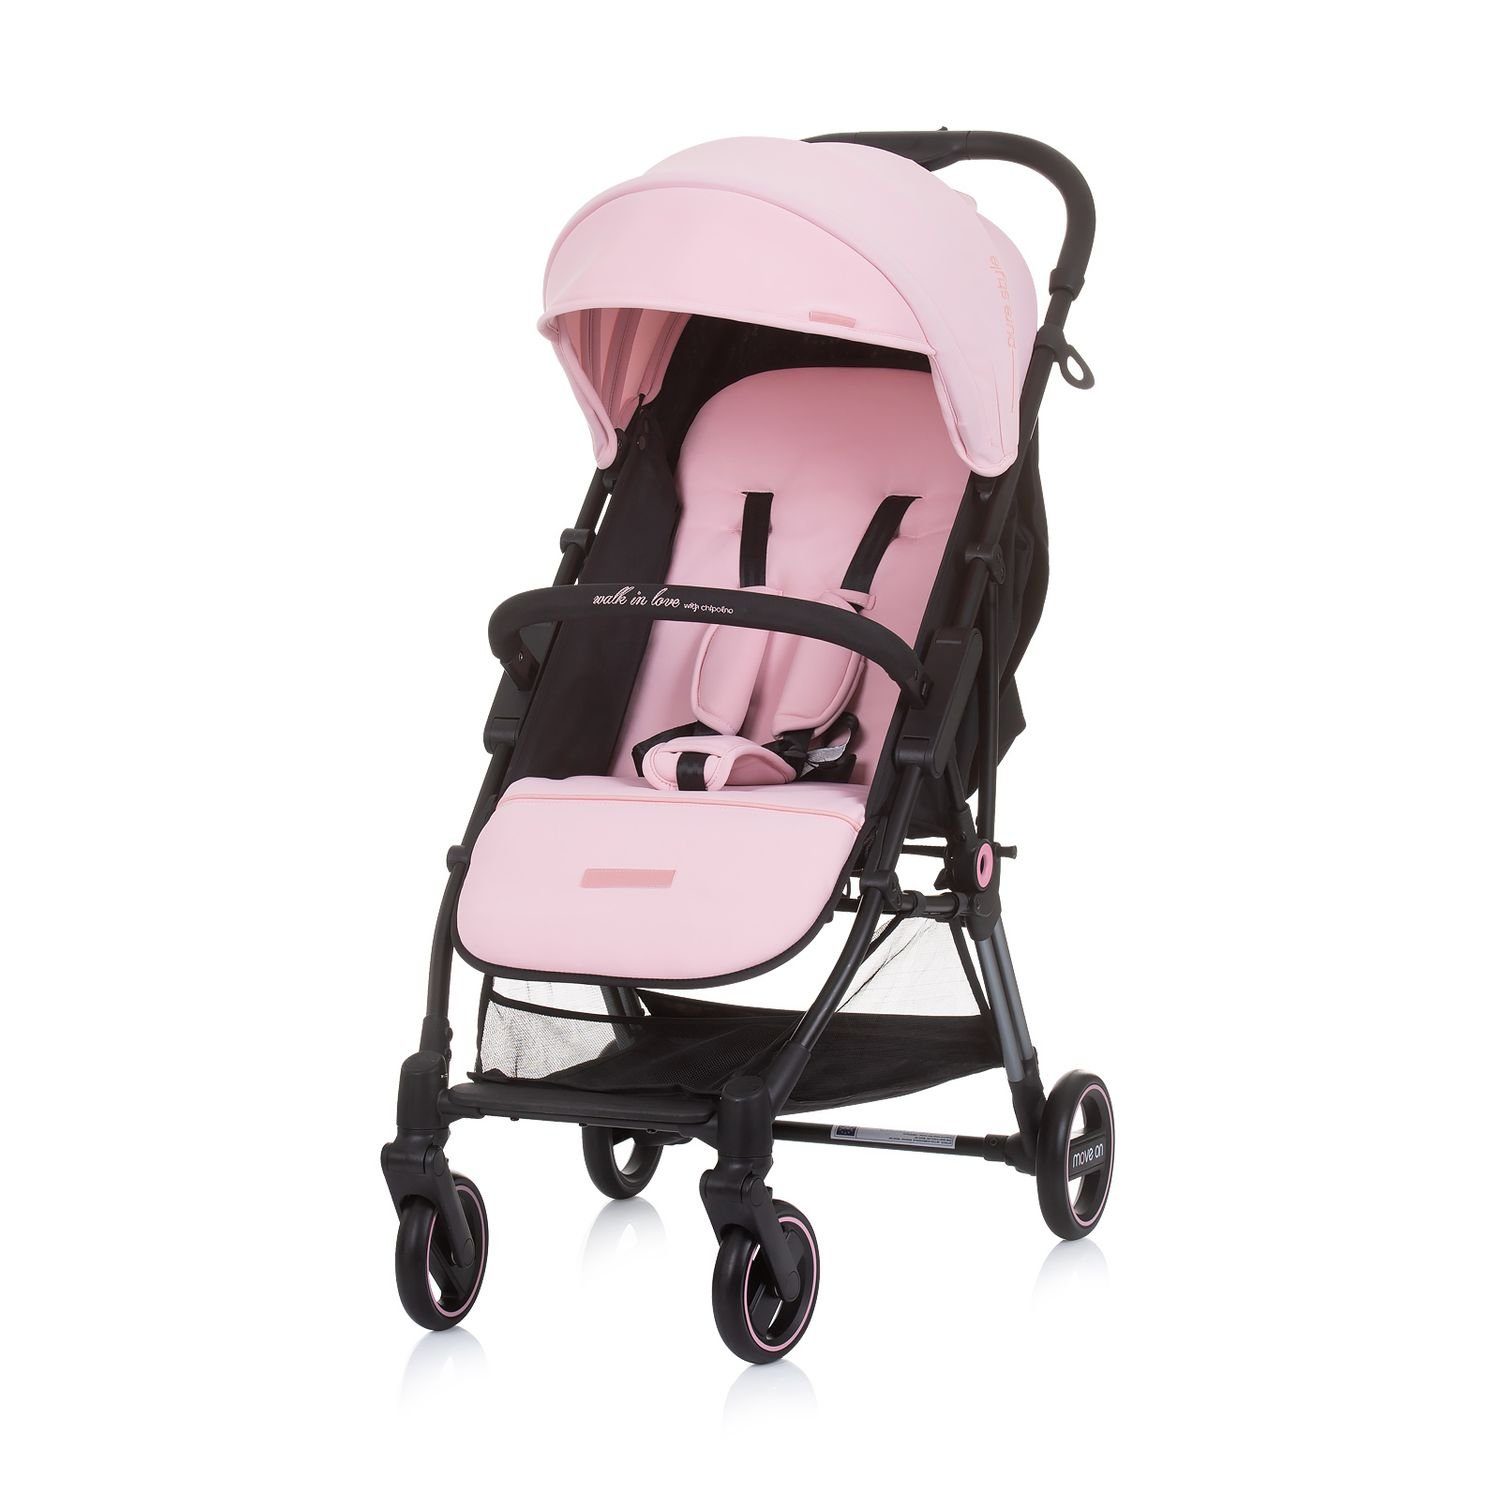 Chipolino Kinder-Buggy Kinderwagen rosa Move gefederte verstellbar on, kg Vorderräder klappbar 6